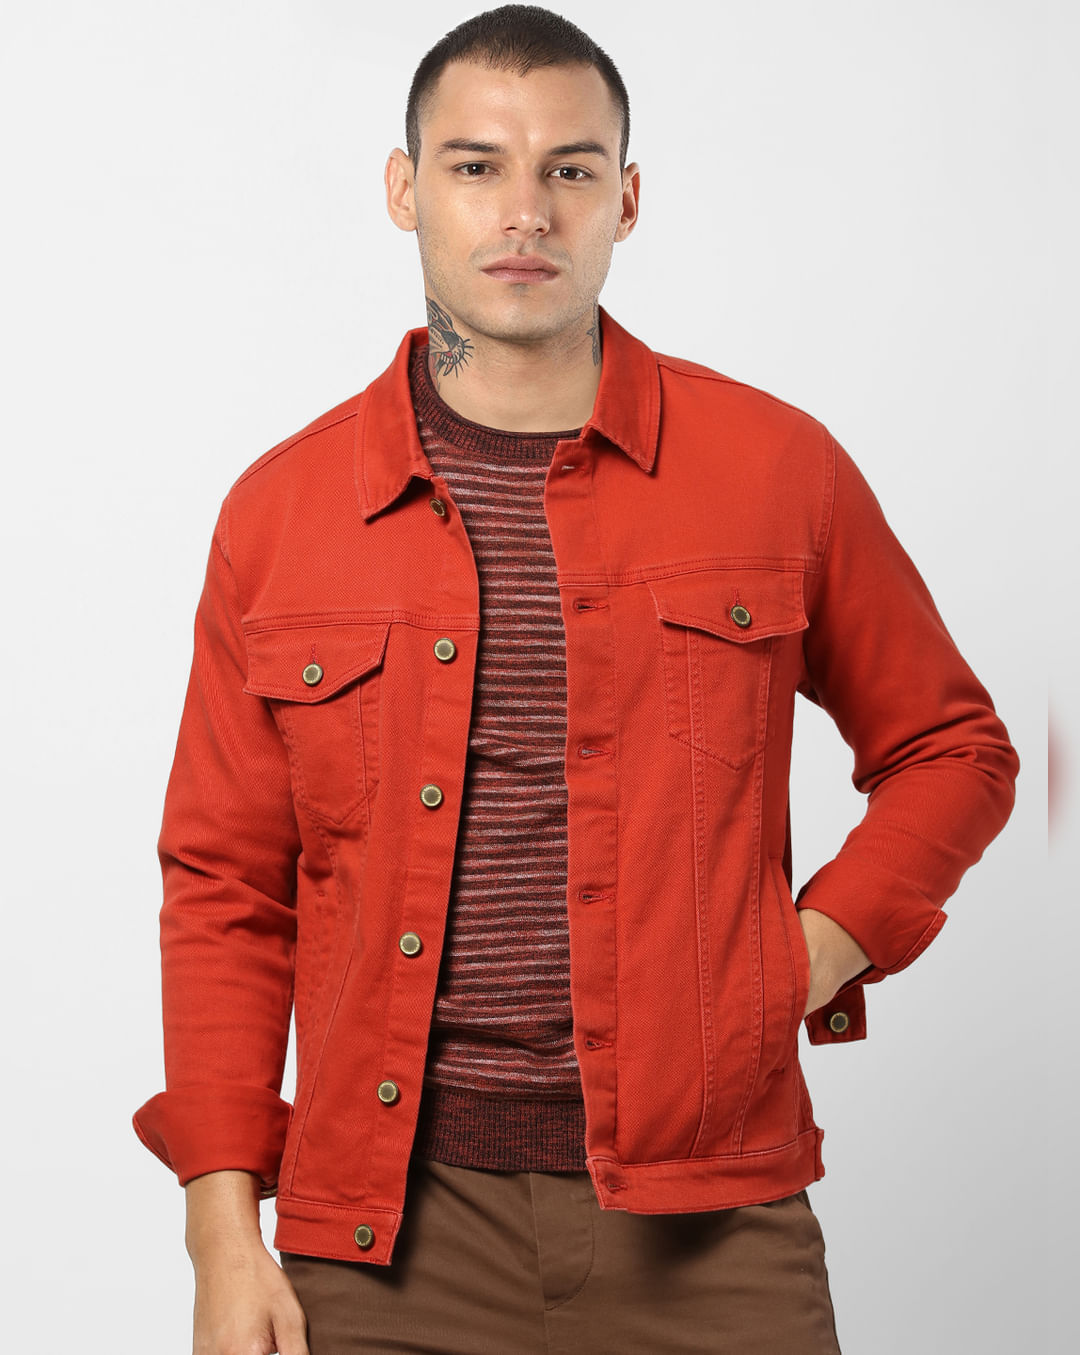 Buy Men Red Denim Jacket Online Jack Jones